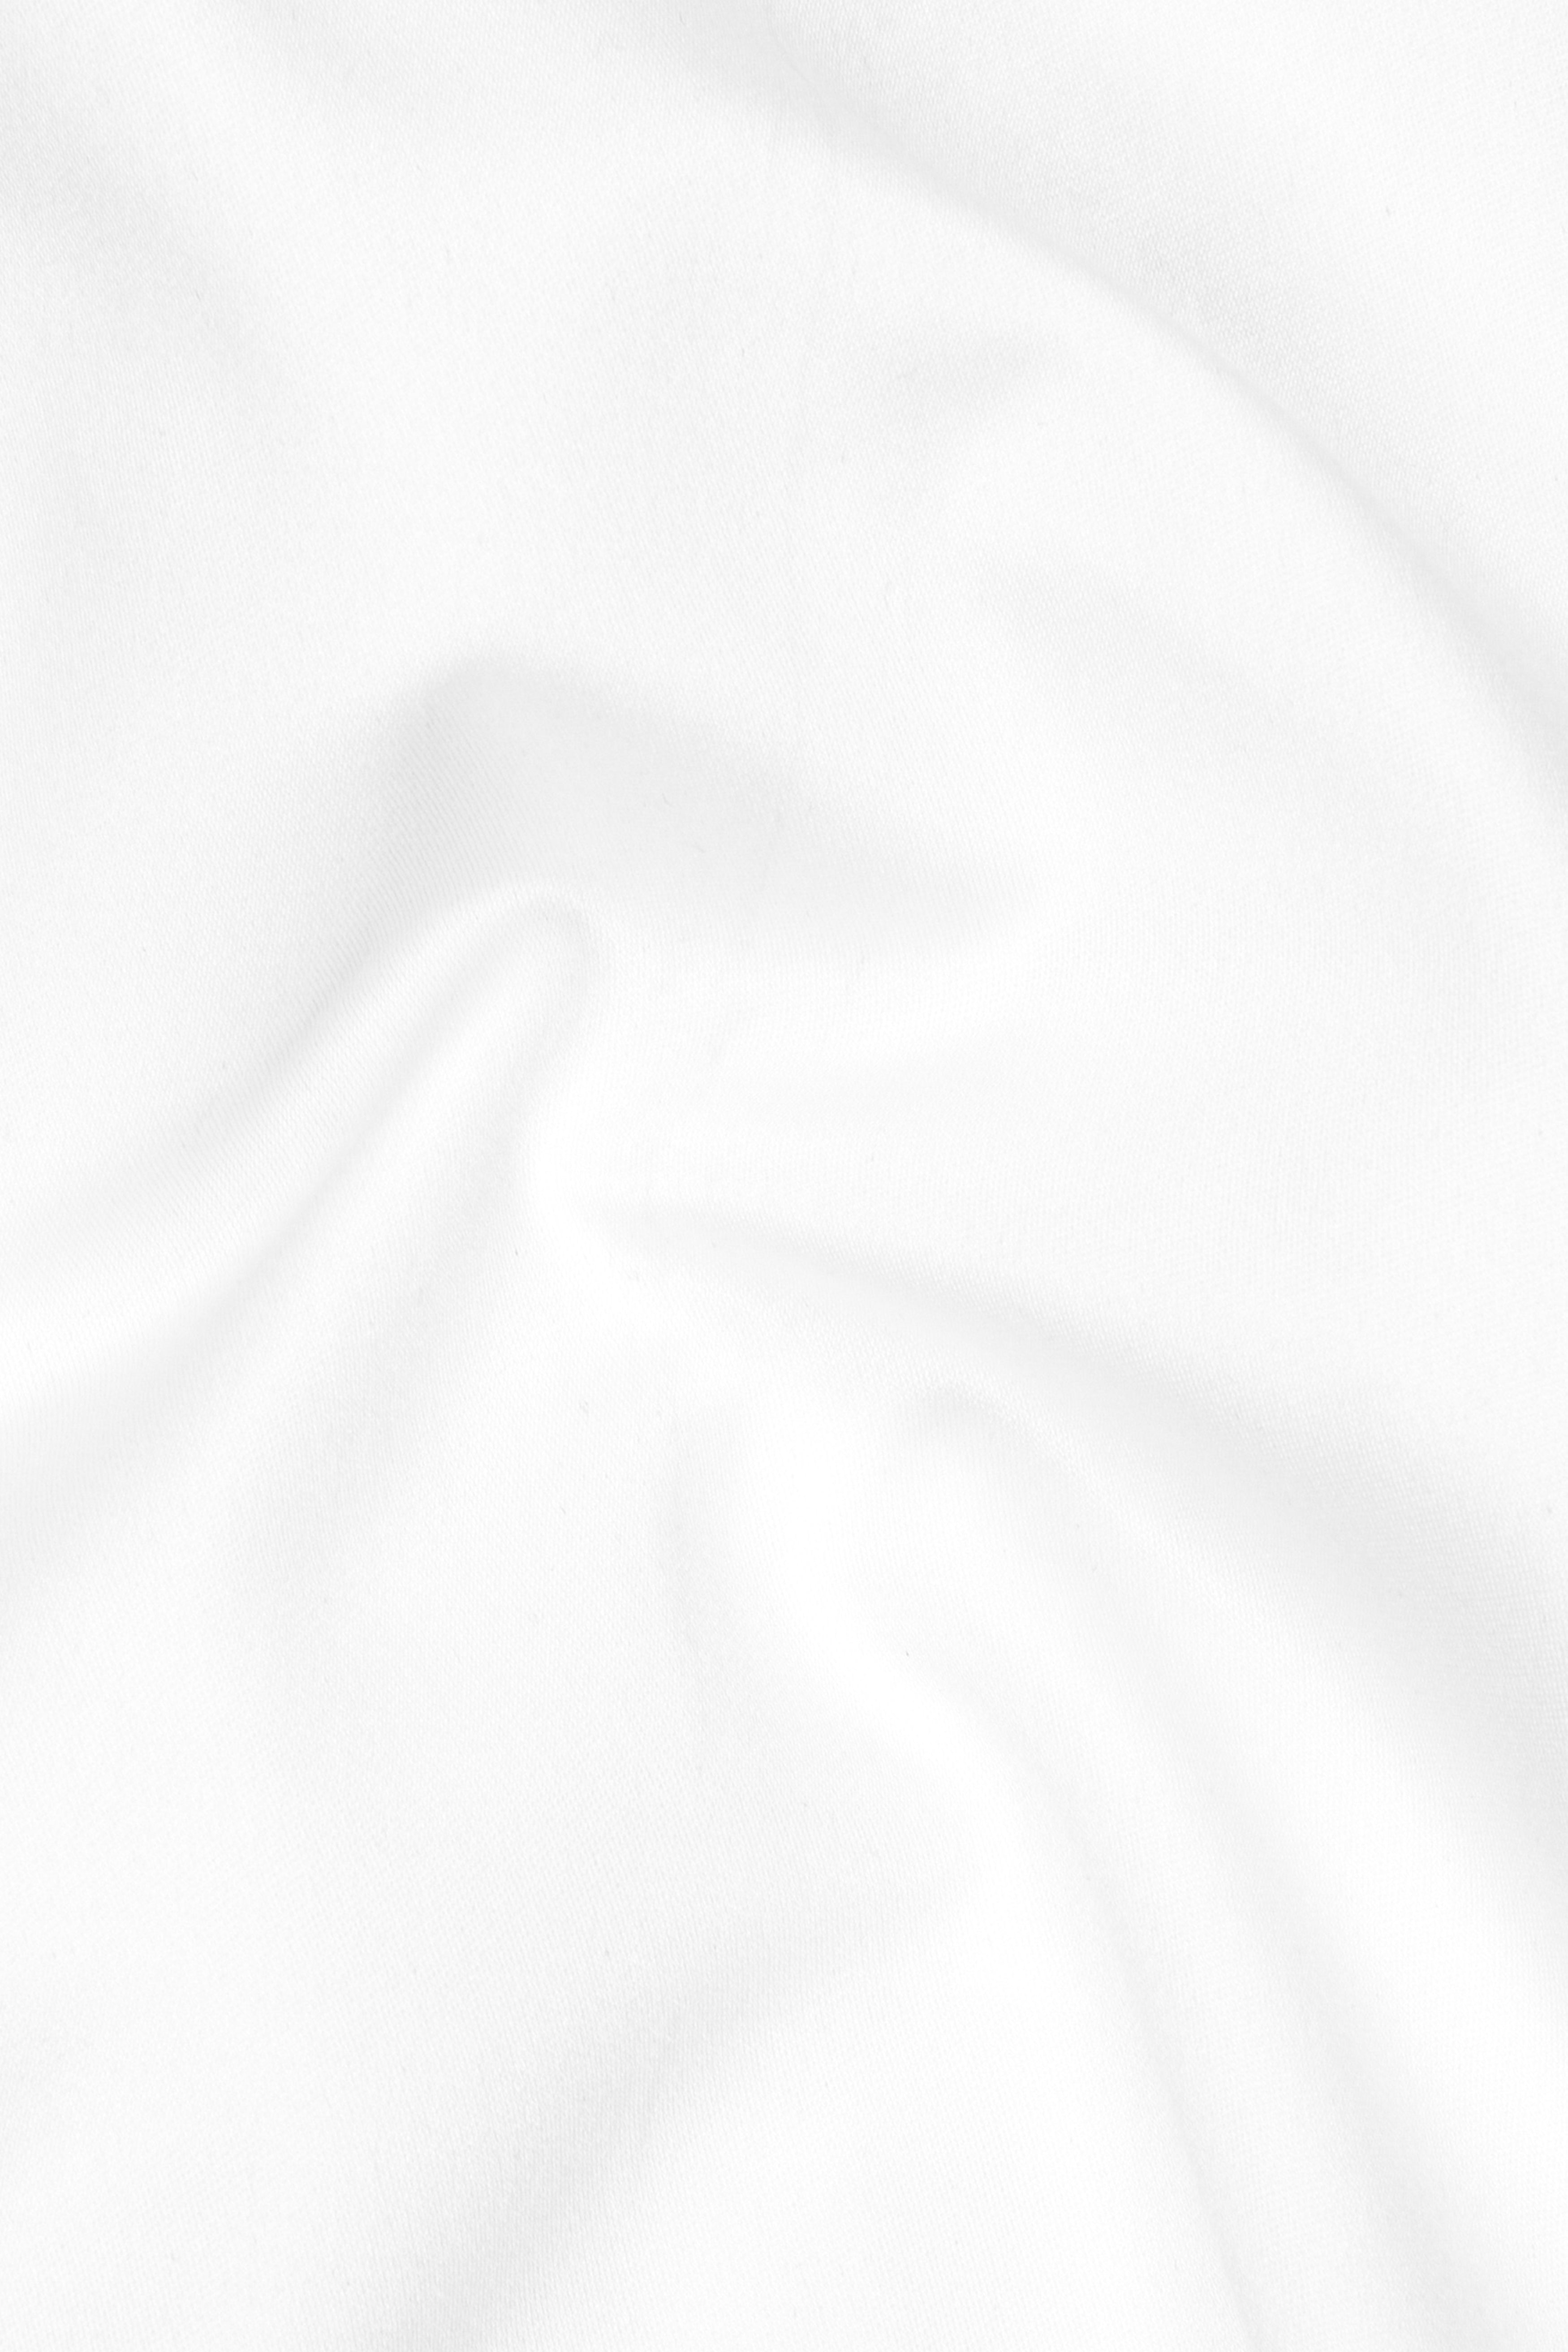 BRIGHT WHITE Subtle Sheen BANDHGALA/MANDARIN SUIT